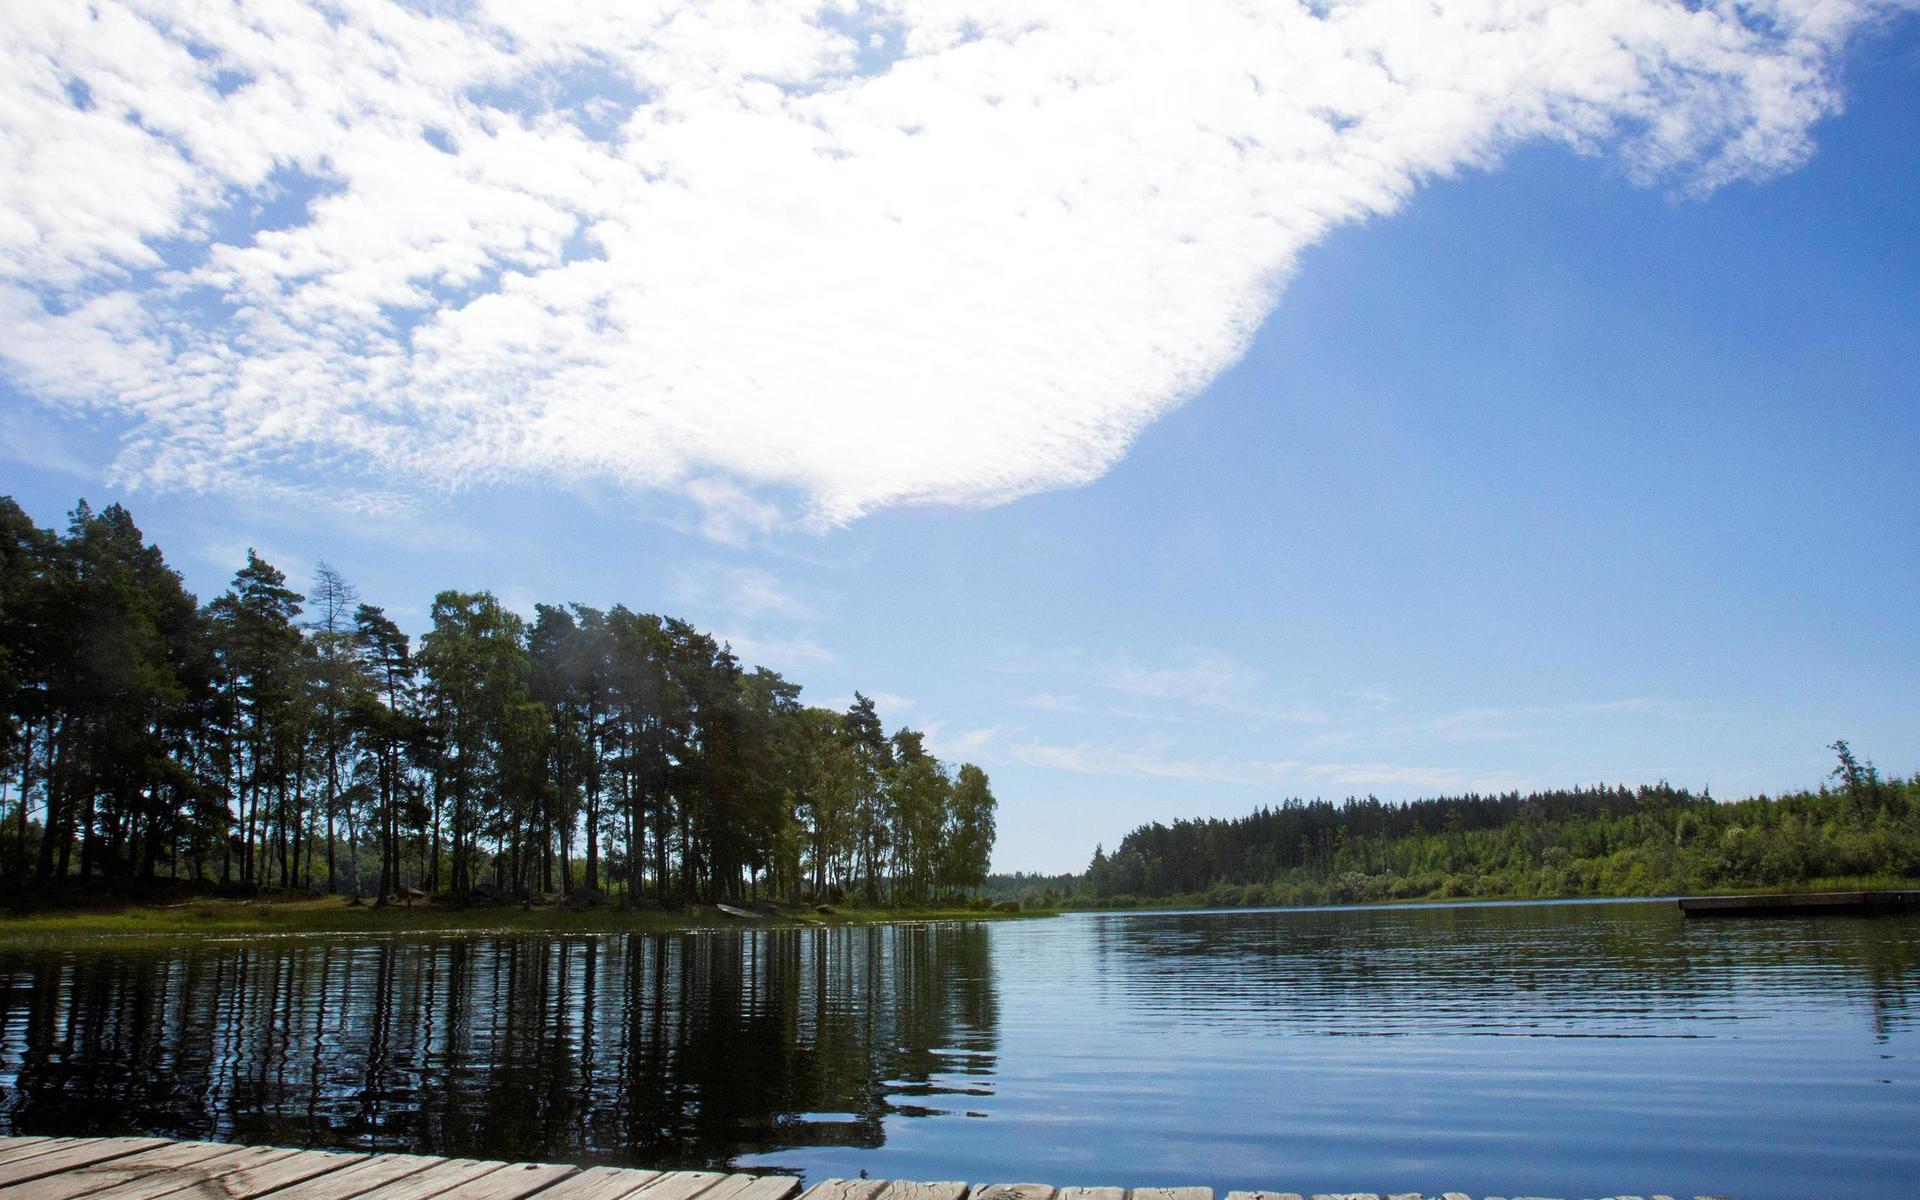 Ska ni bada i helgen? Laholms kommun erbjuder många badpärlor utan saltstänk, såsom Store Sjö som ligger vid Norra Össjö på vägen mellan Hishult och Markaryd.